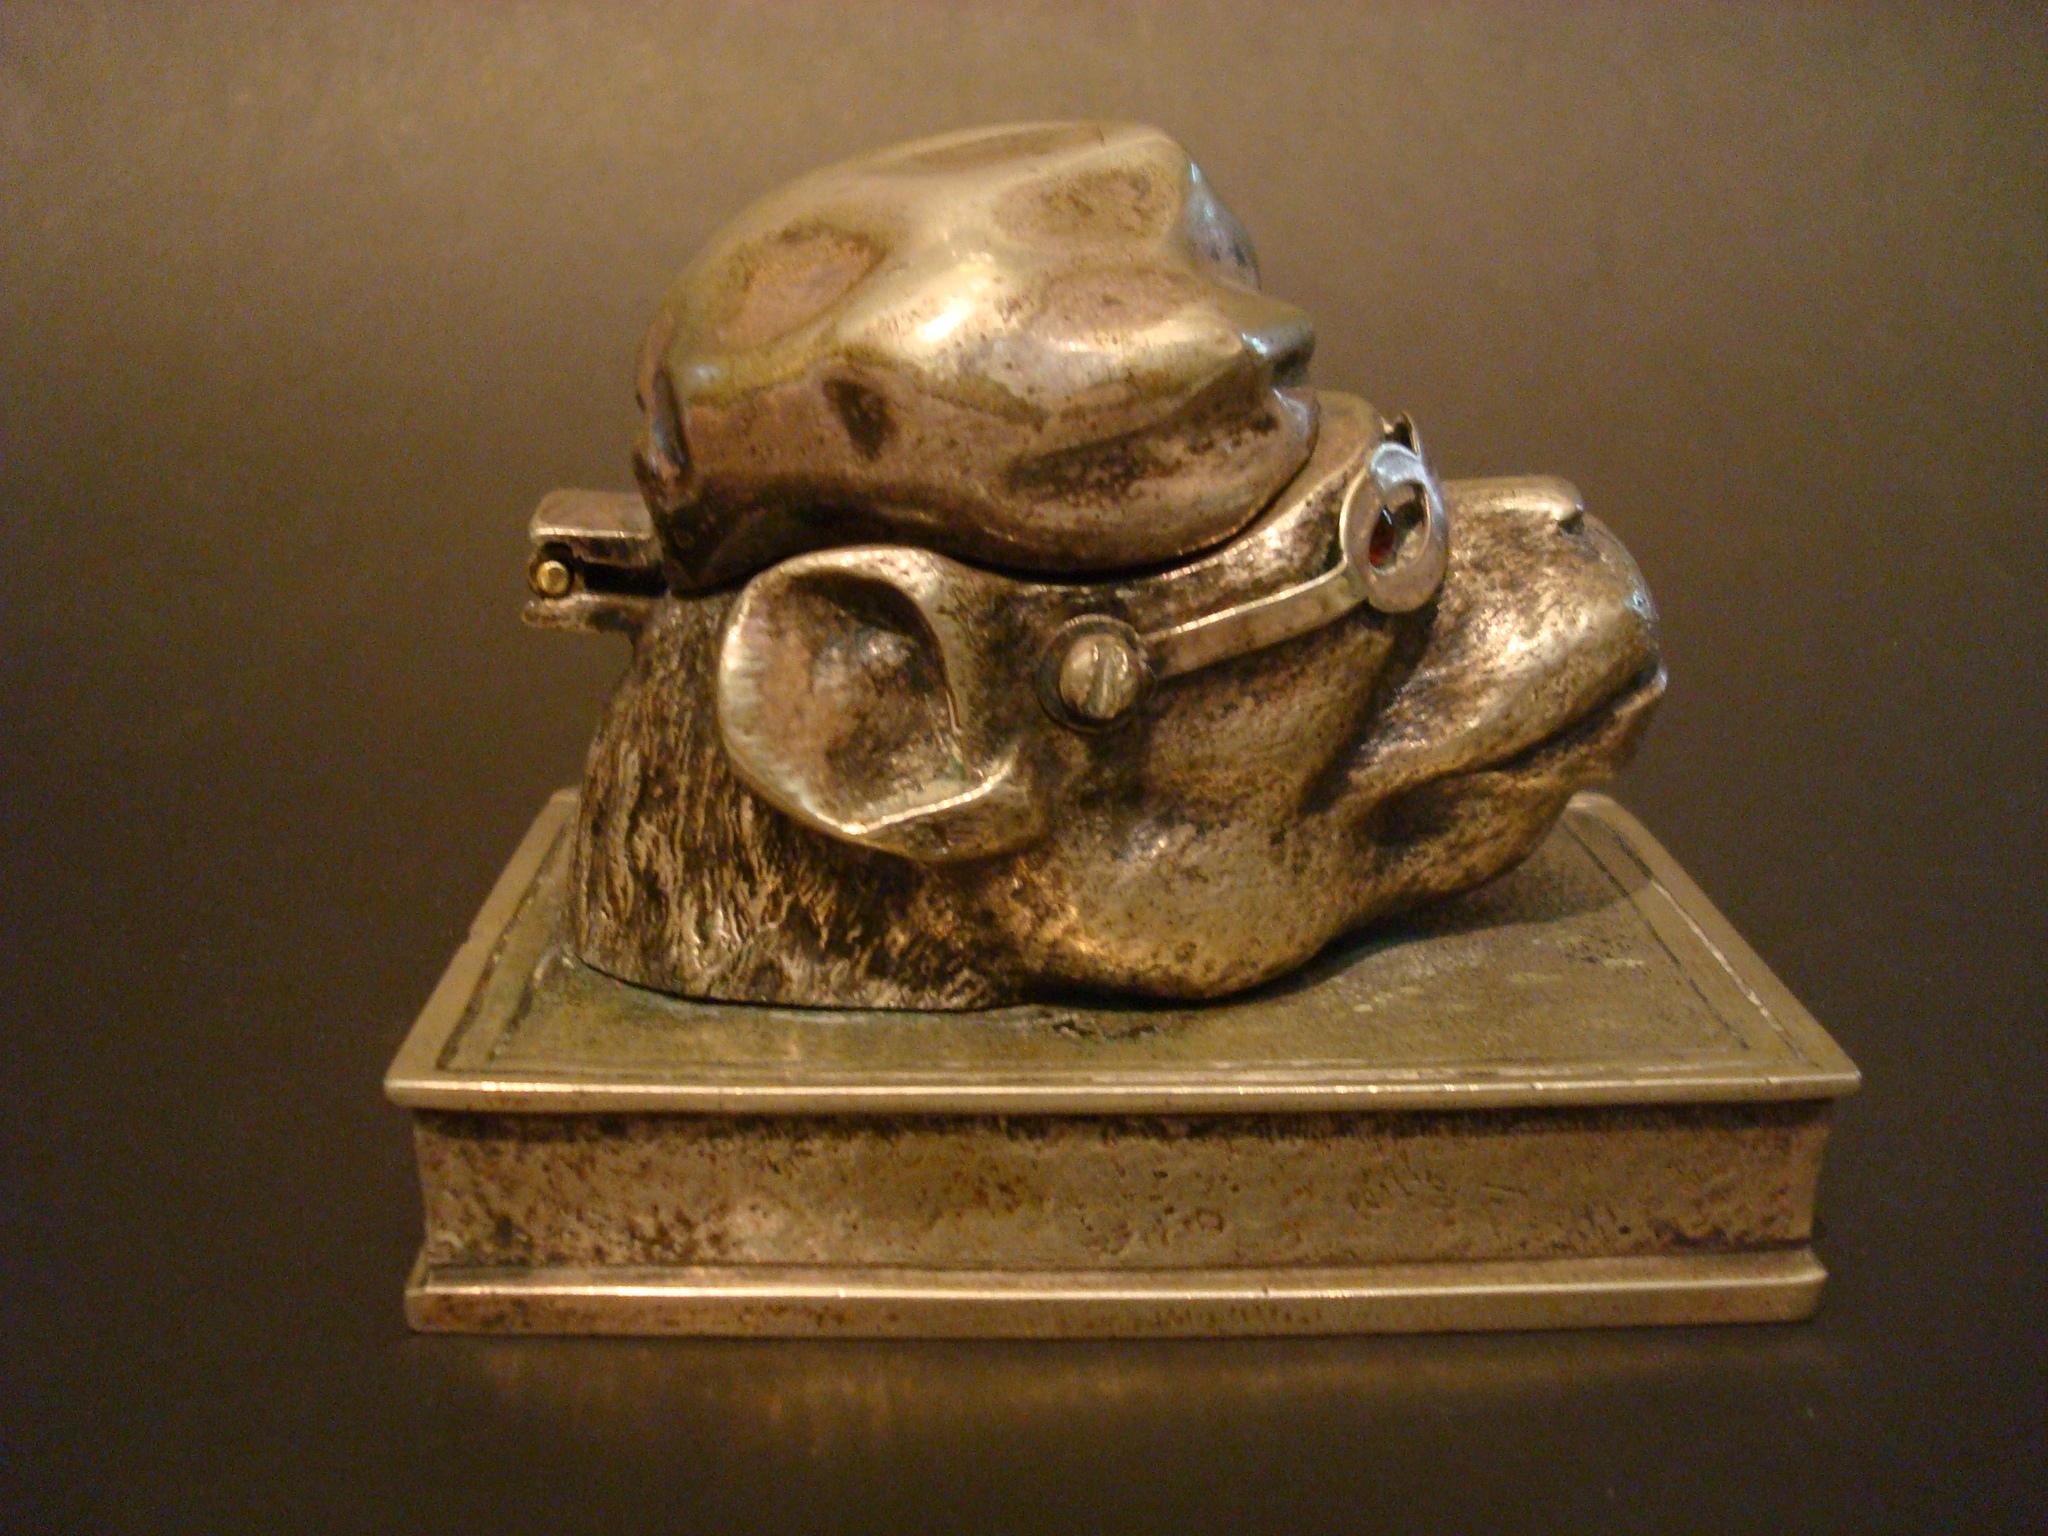 Französisches Bronzetintenfass, zoomorphes Tintenfass in Form eines Affenkopfes in einer aufklappbaren Nachtkappe, mit Glasaugen
Bronze-Tintenfass-Statue in Form eines Affen mit Hut, einem gläsernen Tintenfass und Glasaugen.